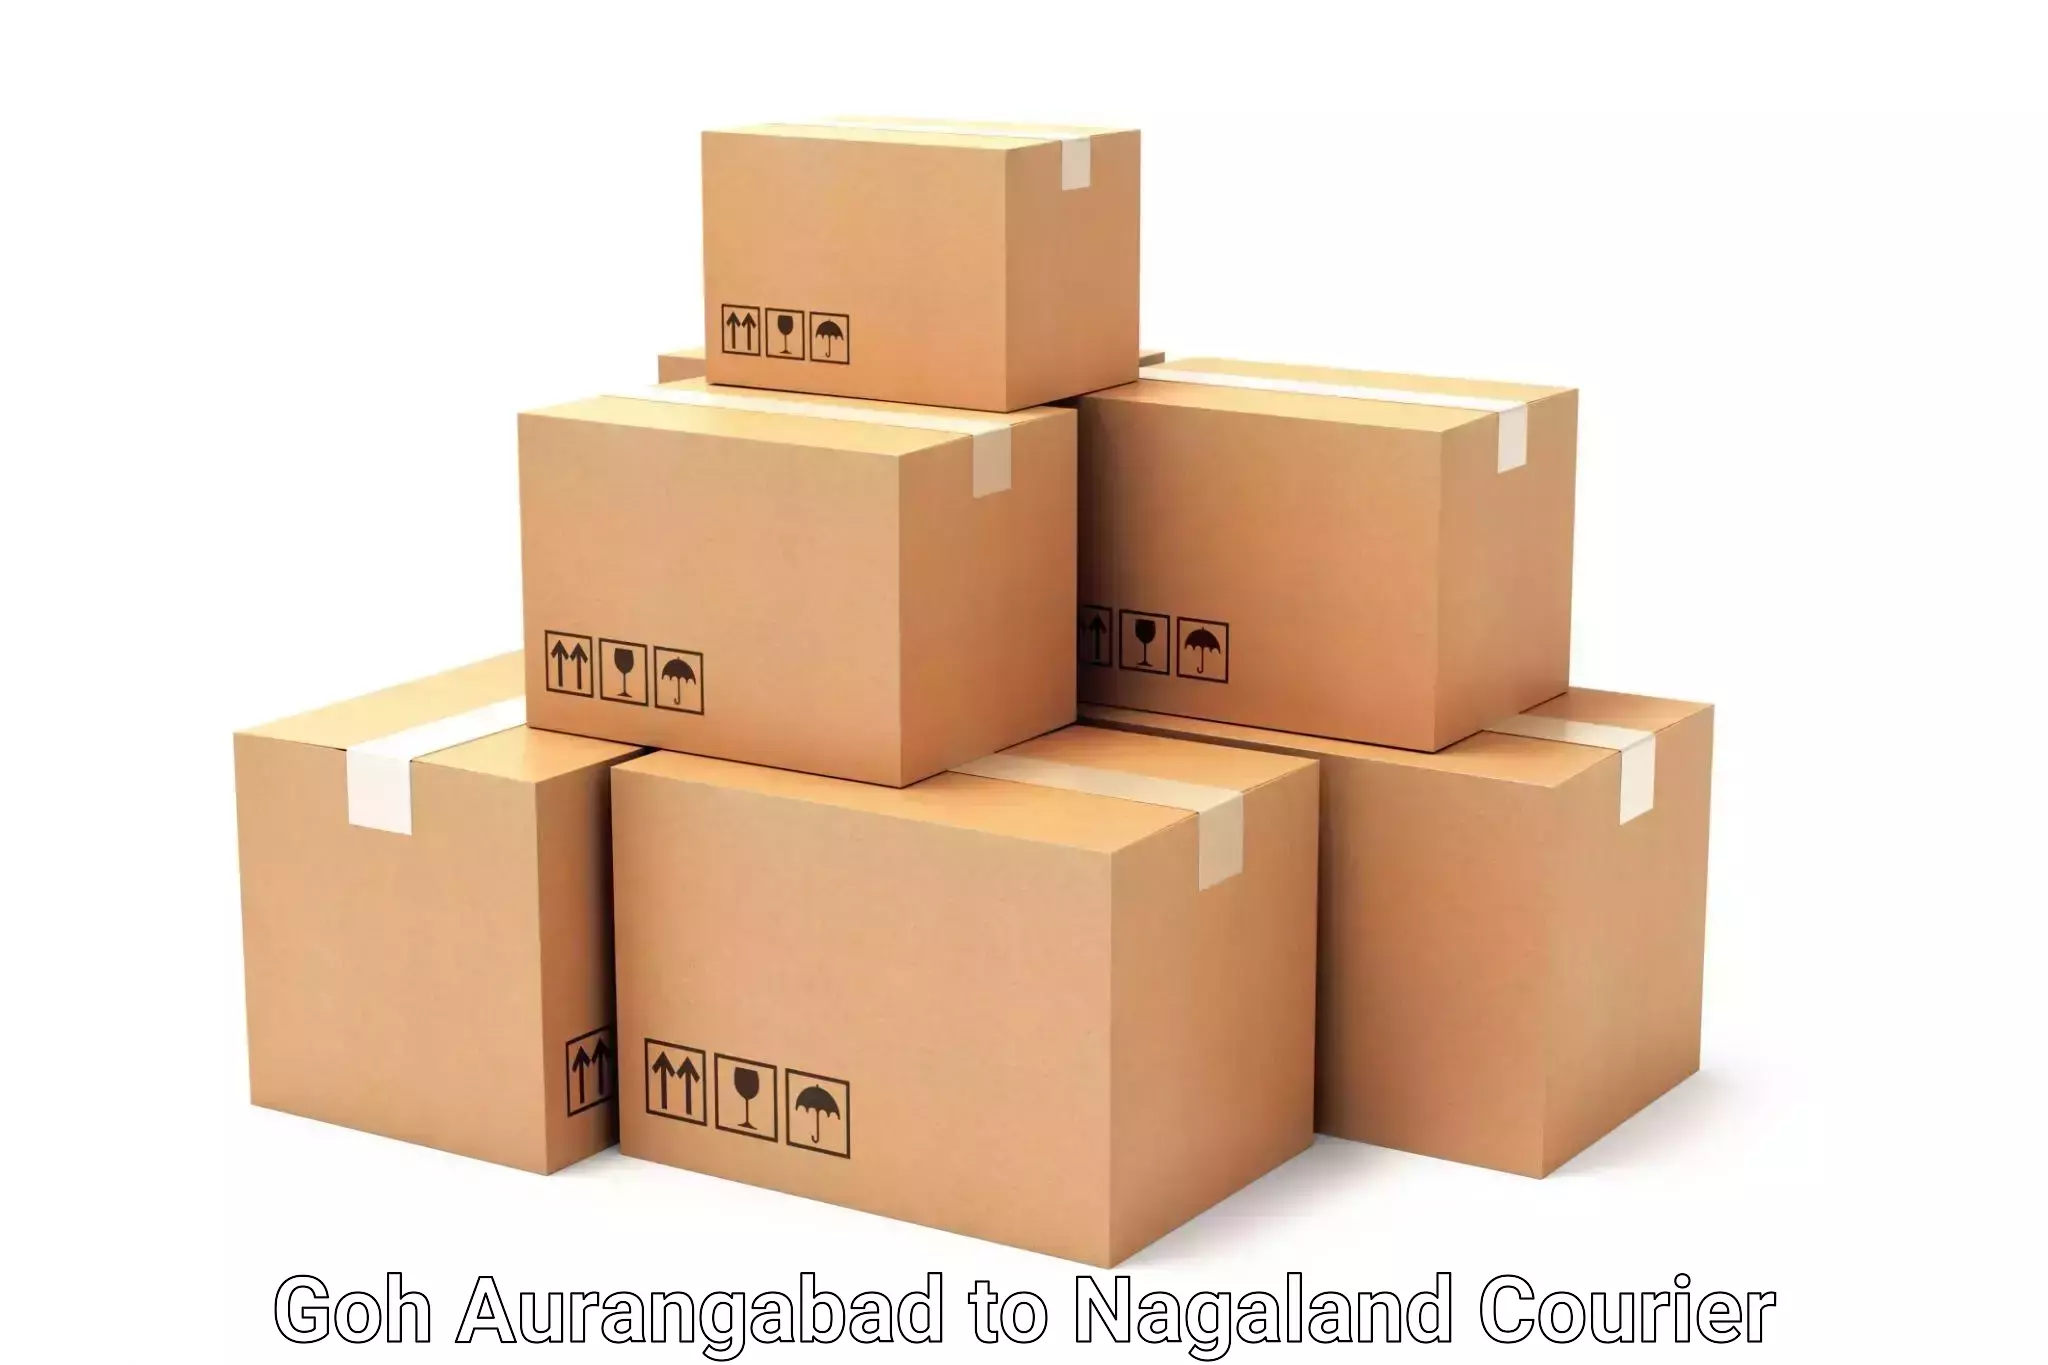 Luggage shipment specialists Goh Aurangabad to Mokokchung